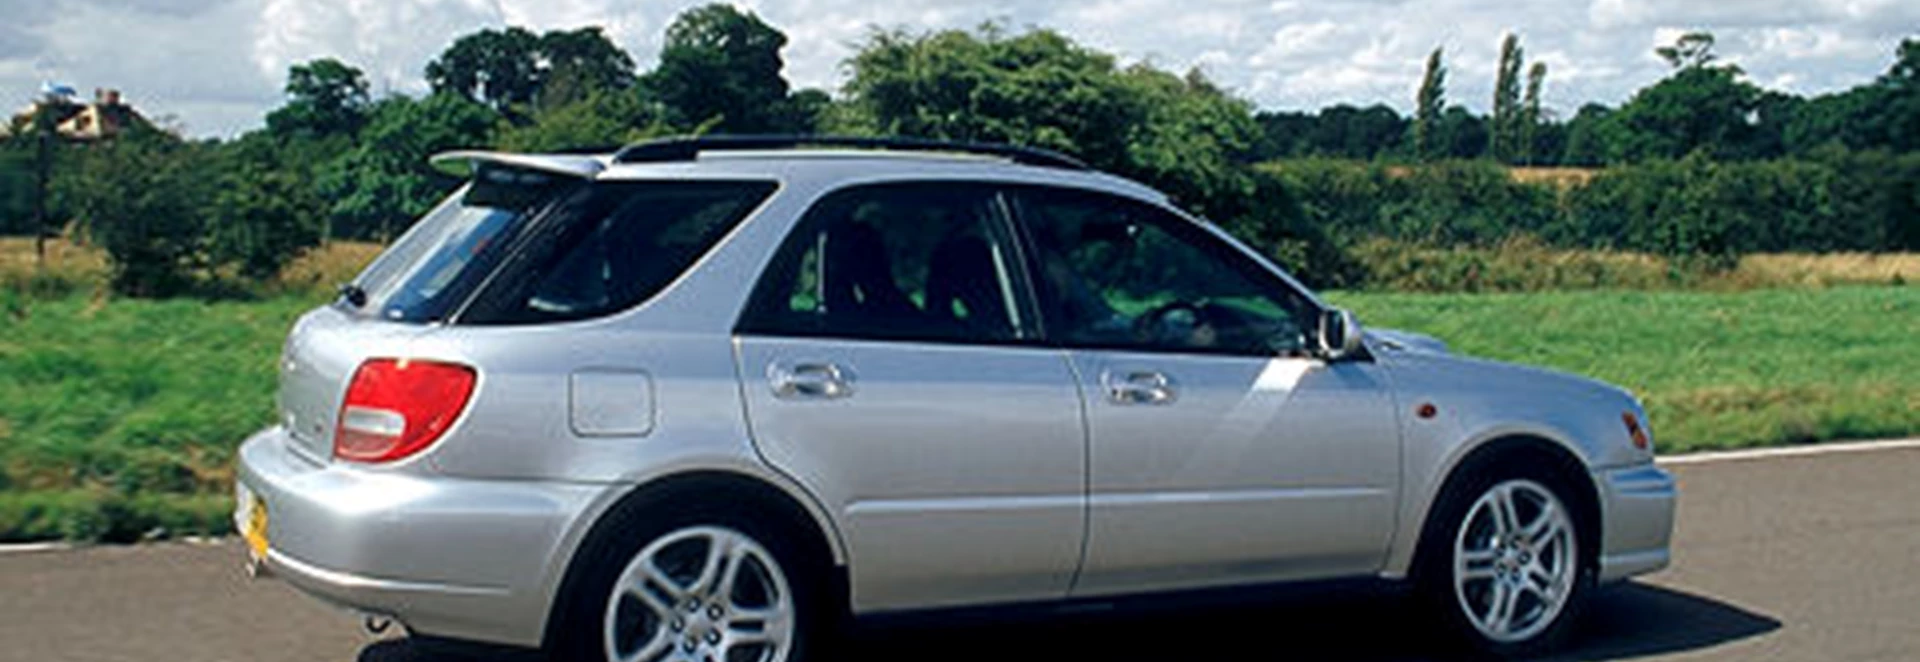 Subaru Impreza 2.0 WRX Sports Wagon (2001) 